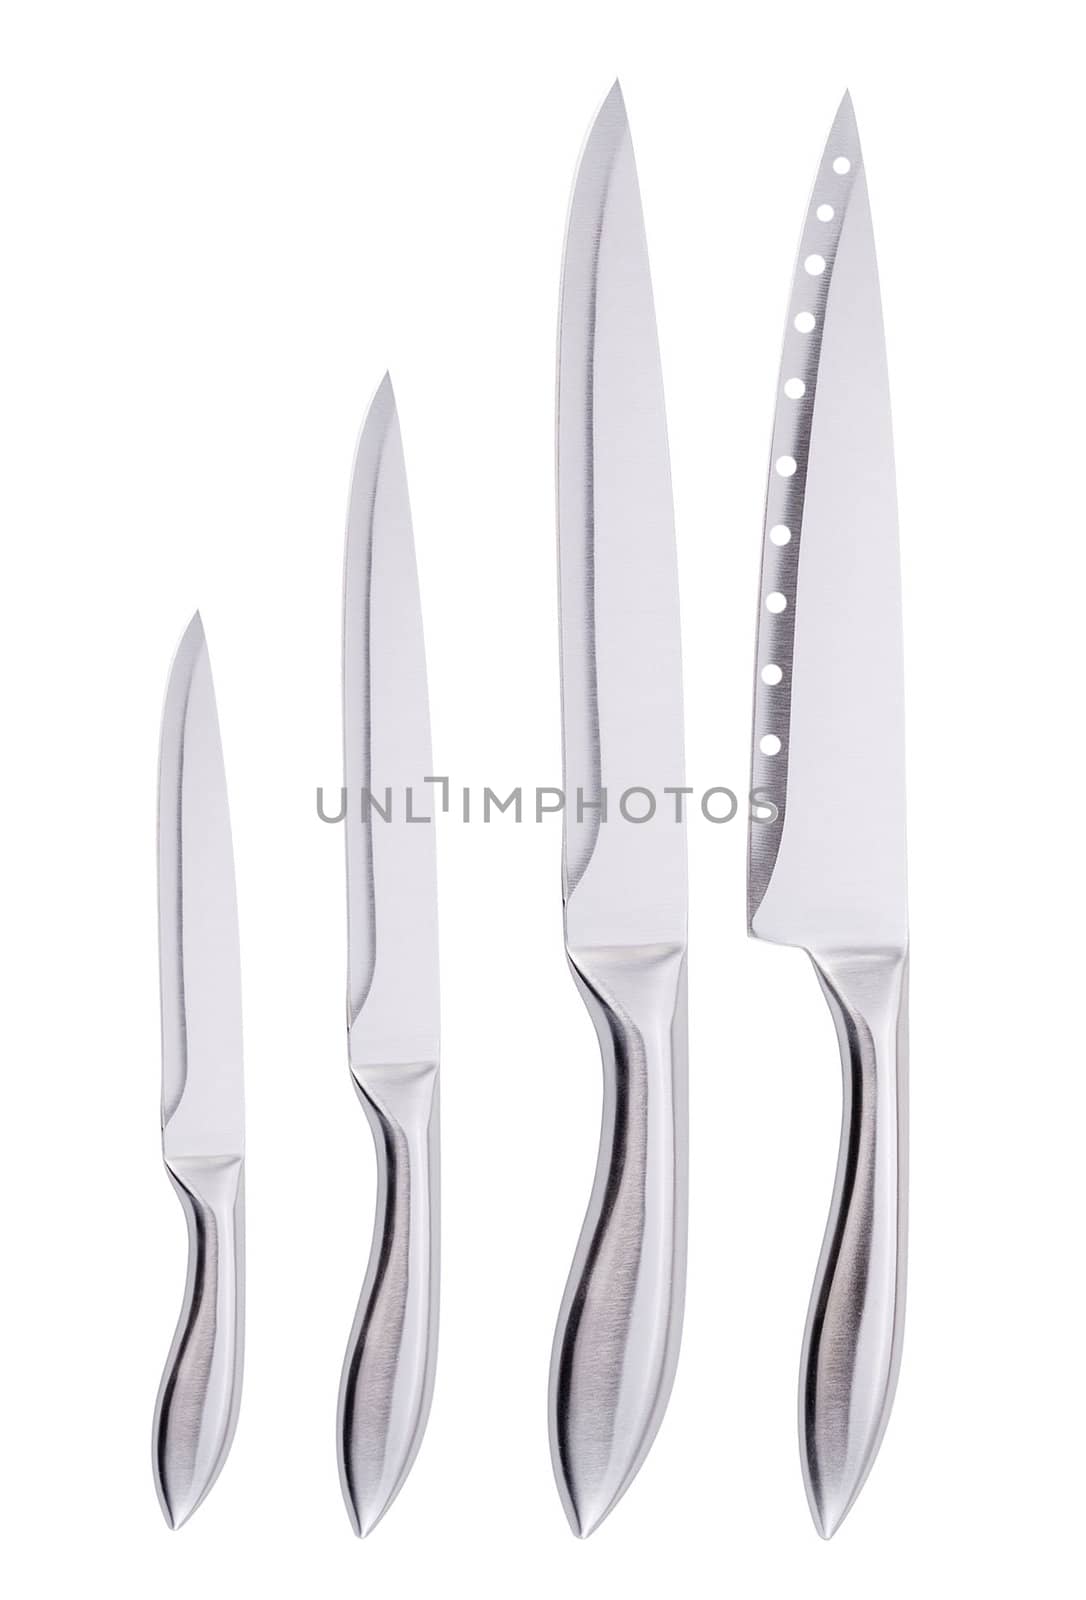 Set of knifes isolated on white